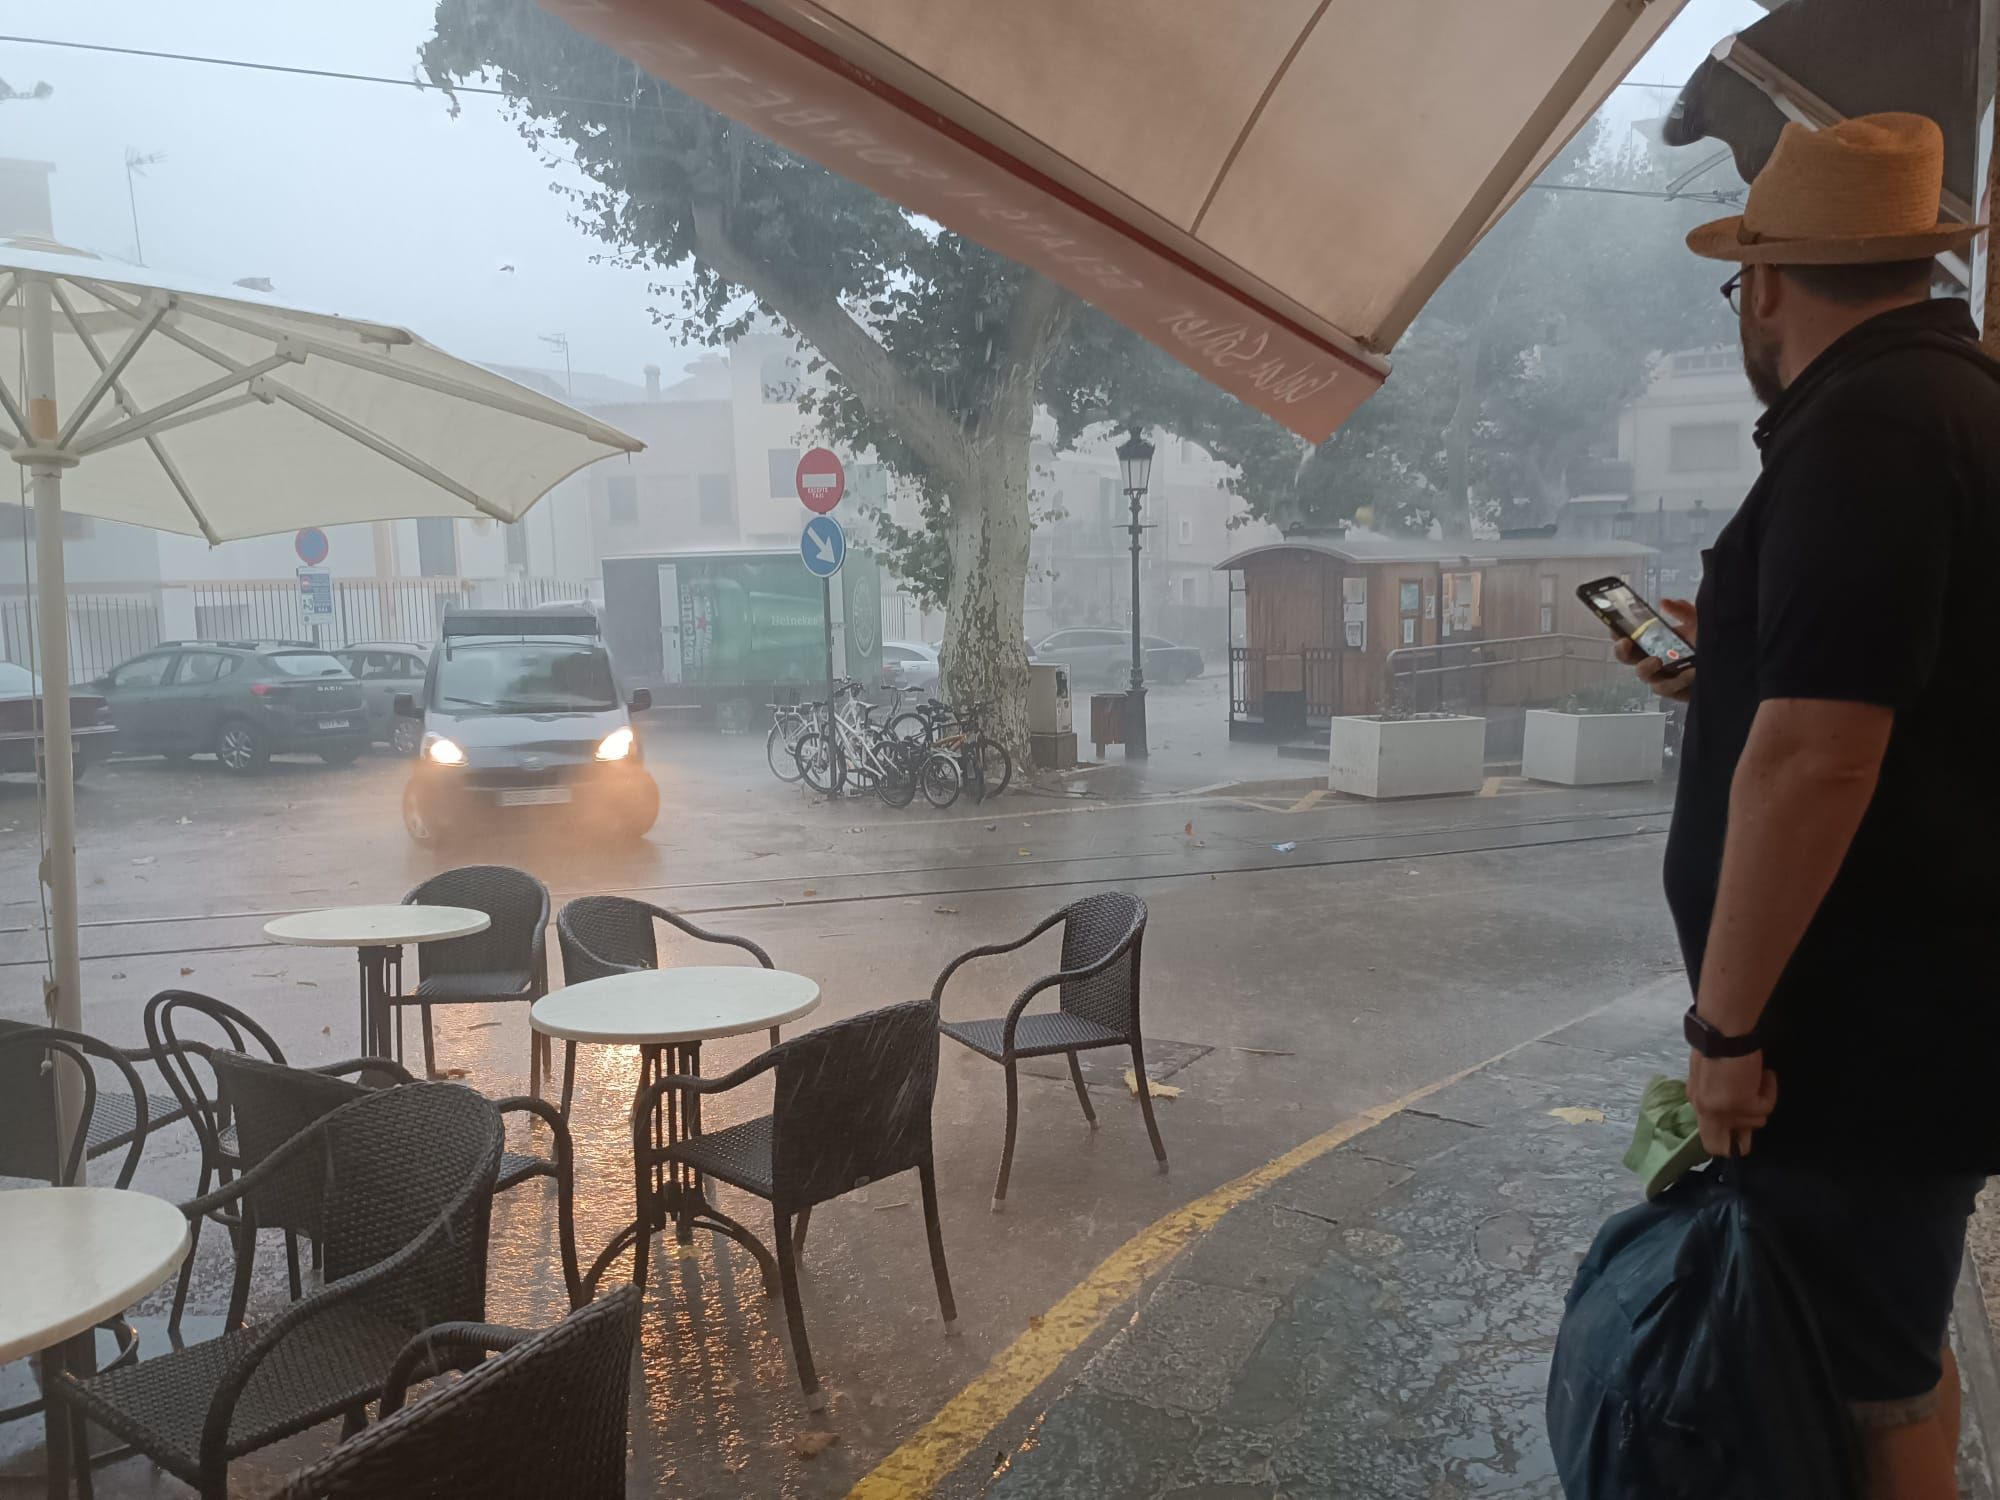 Tormentas en Mallorca: Las lluvias descargan en Sóller 50 litros en veinte minutos